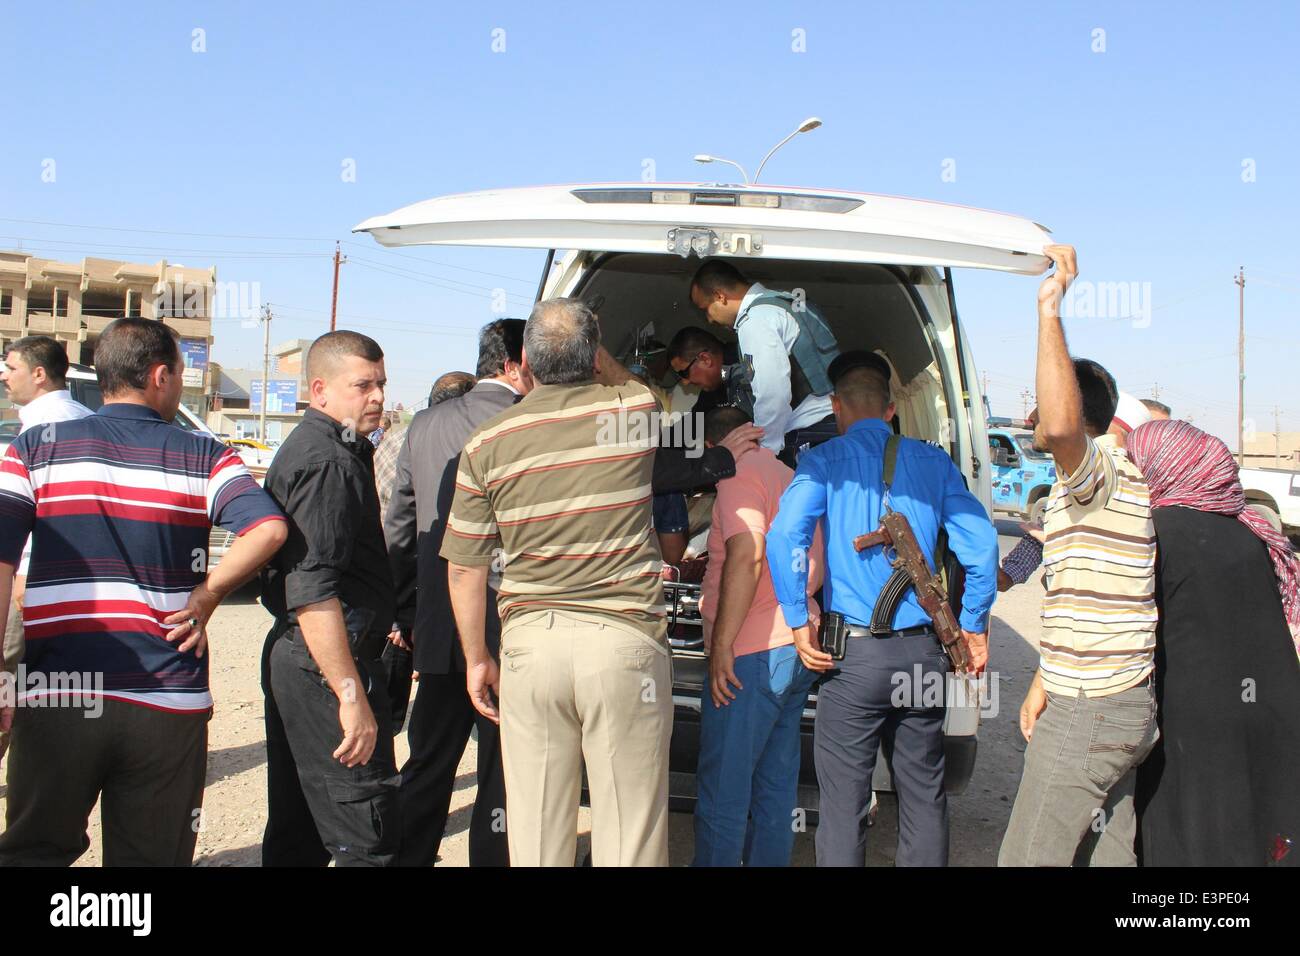 Kirkouk. 25 Juin, 2014. Inspecter le corps de police de Munir al-Qafili, le chef de la ville de Kirkouk conseil, après qu'il a été assassiné par des inconnus à Kirkouk, Irak, 24 juin 2014. © Xinhua/Alamy Live News Banque D'Images